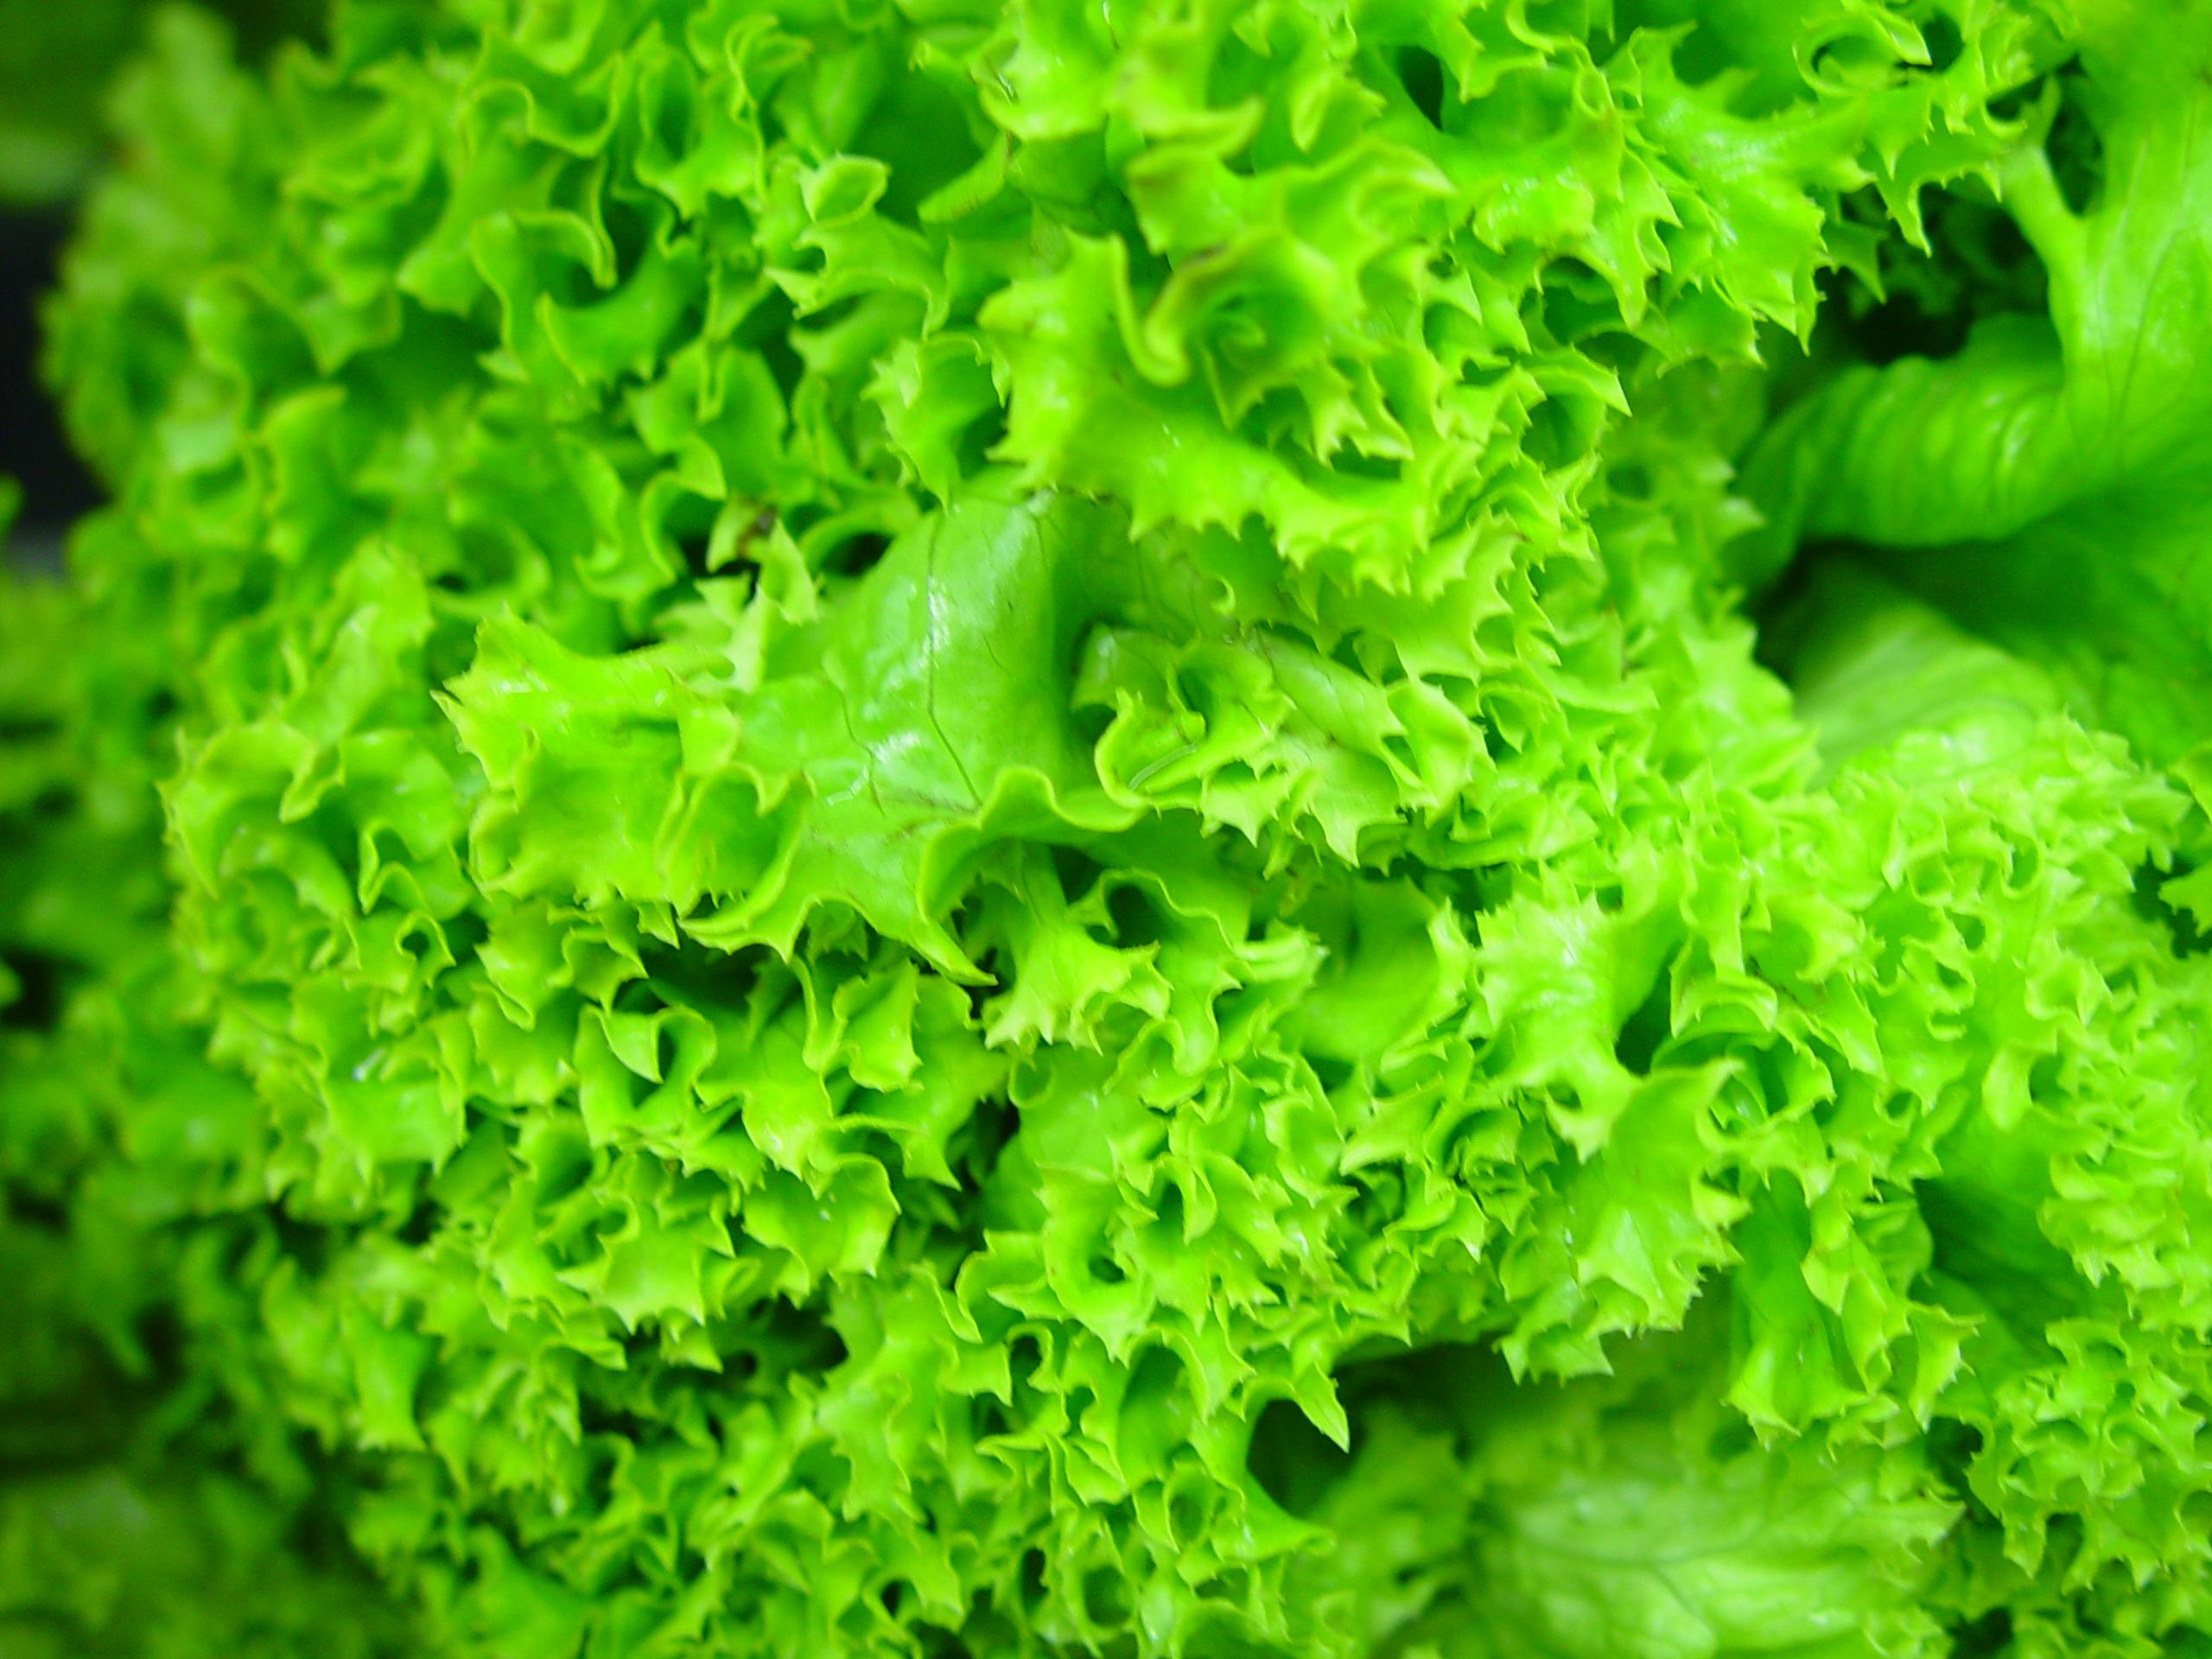 Почему зеленый салат так полезен?